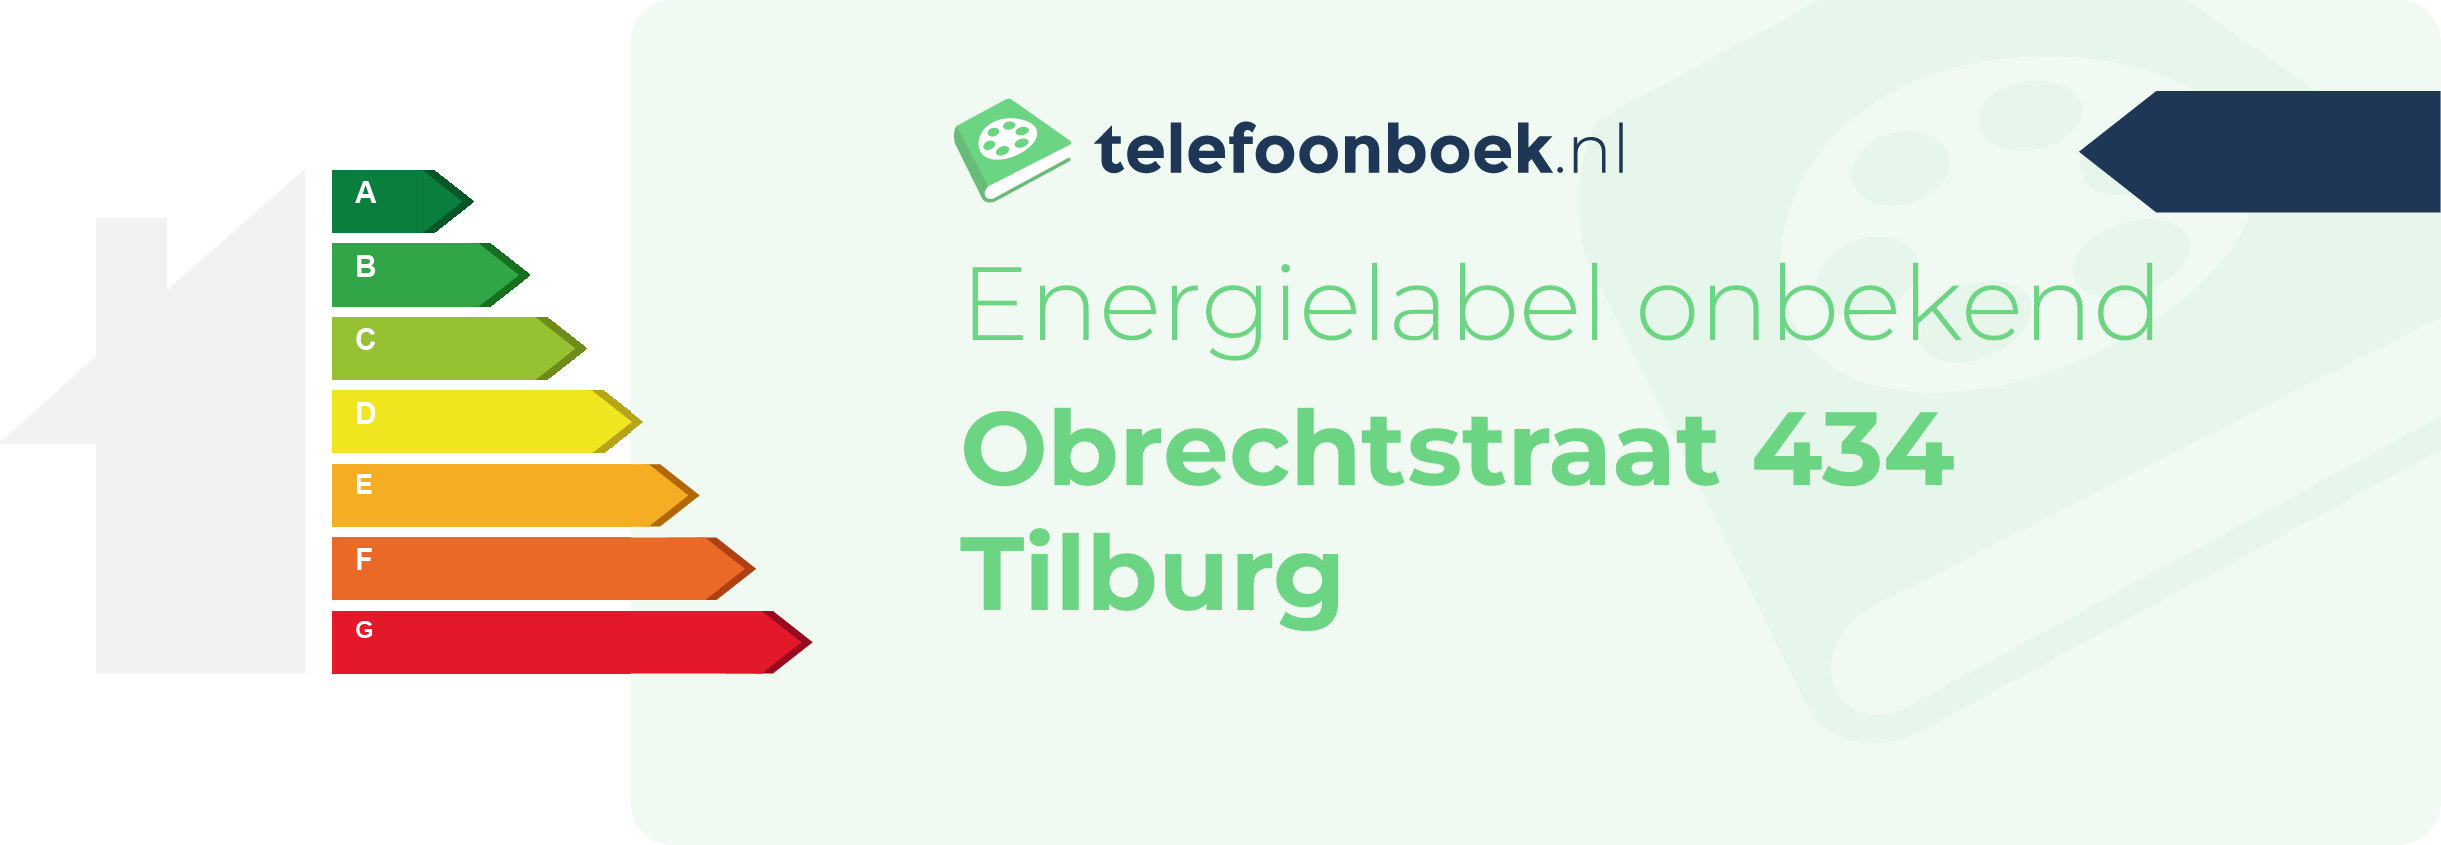 Energielabel Obrechtstraat 434 Tilburg